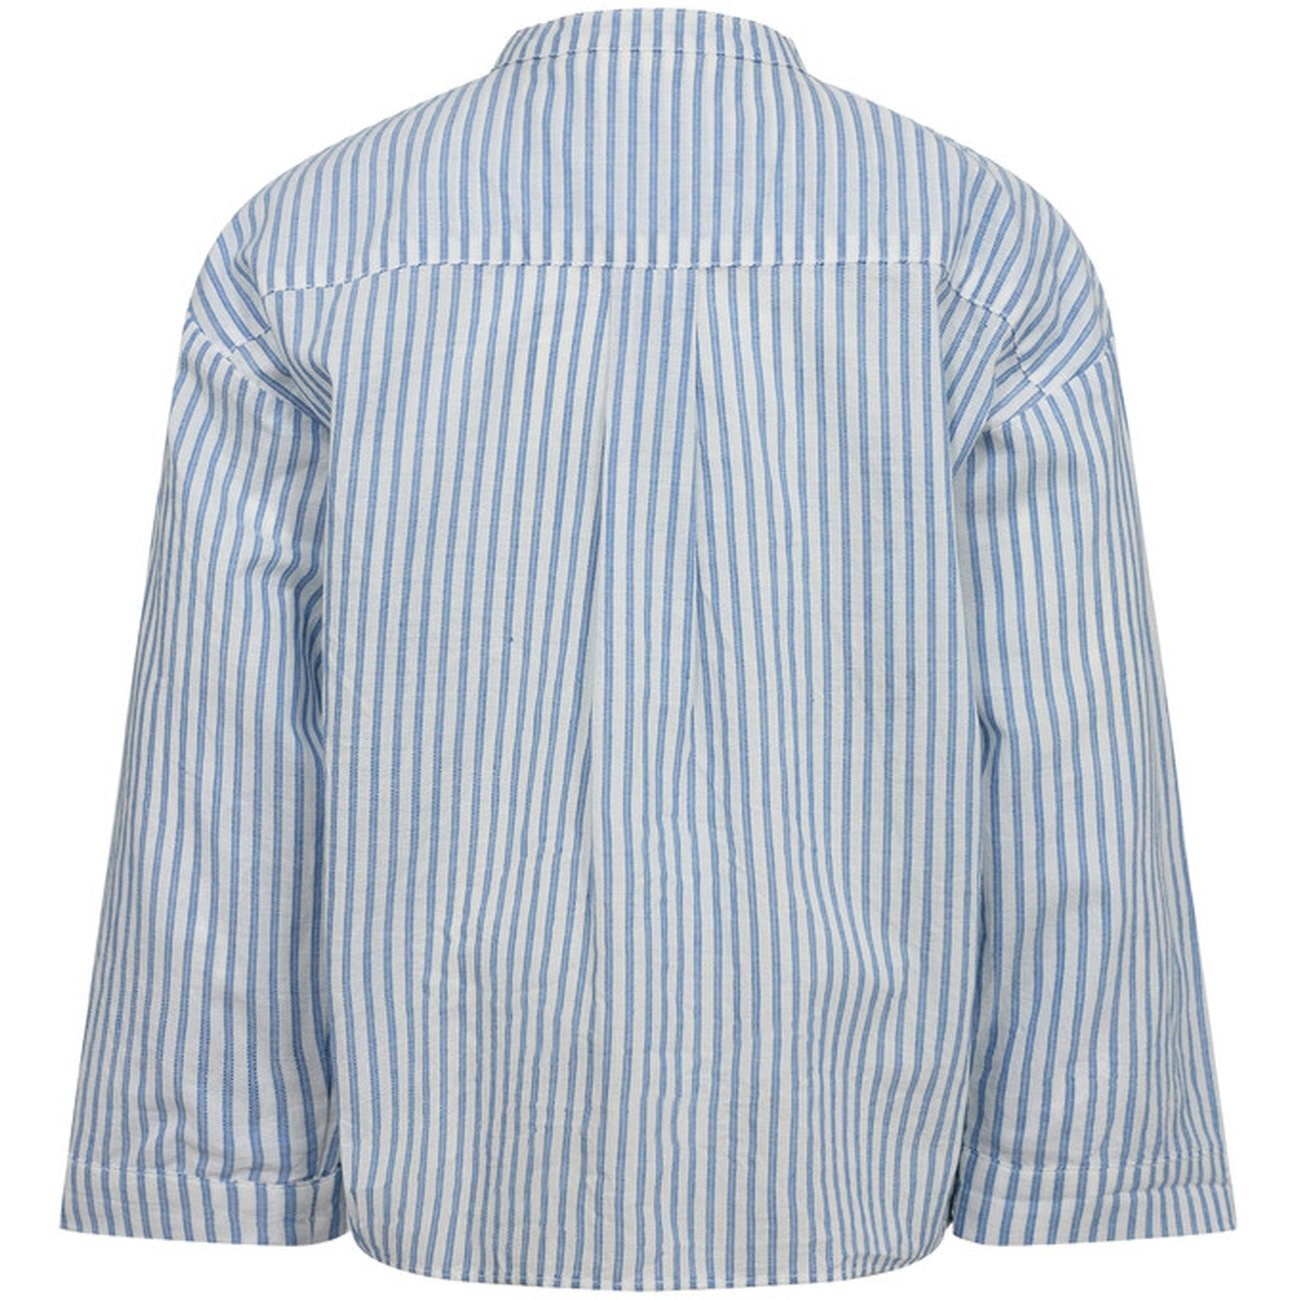 Sofie Schnoor Stripe Cotton Shirt 4